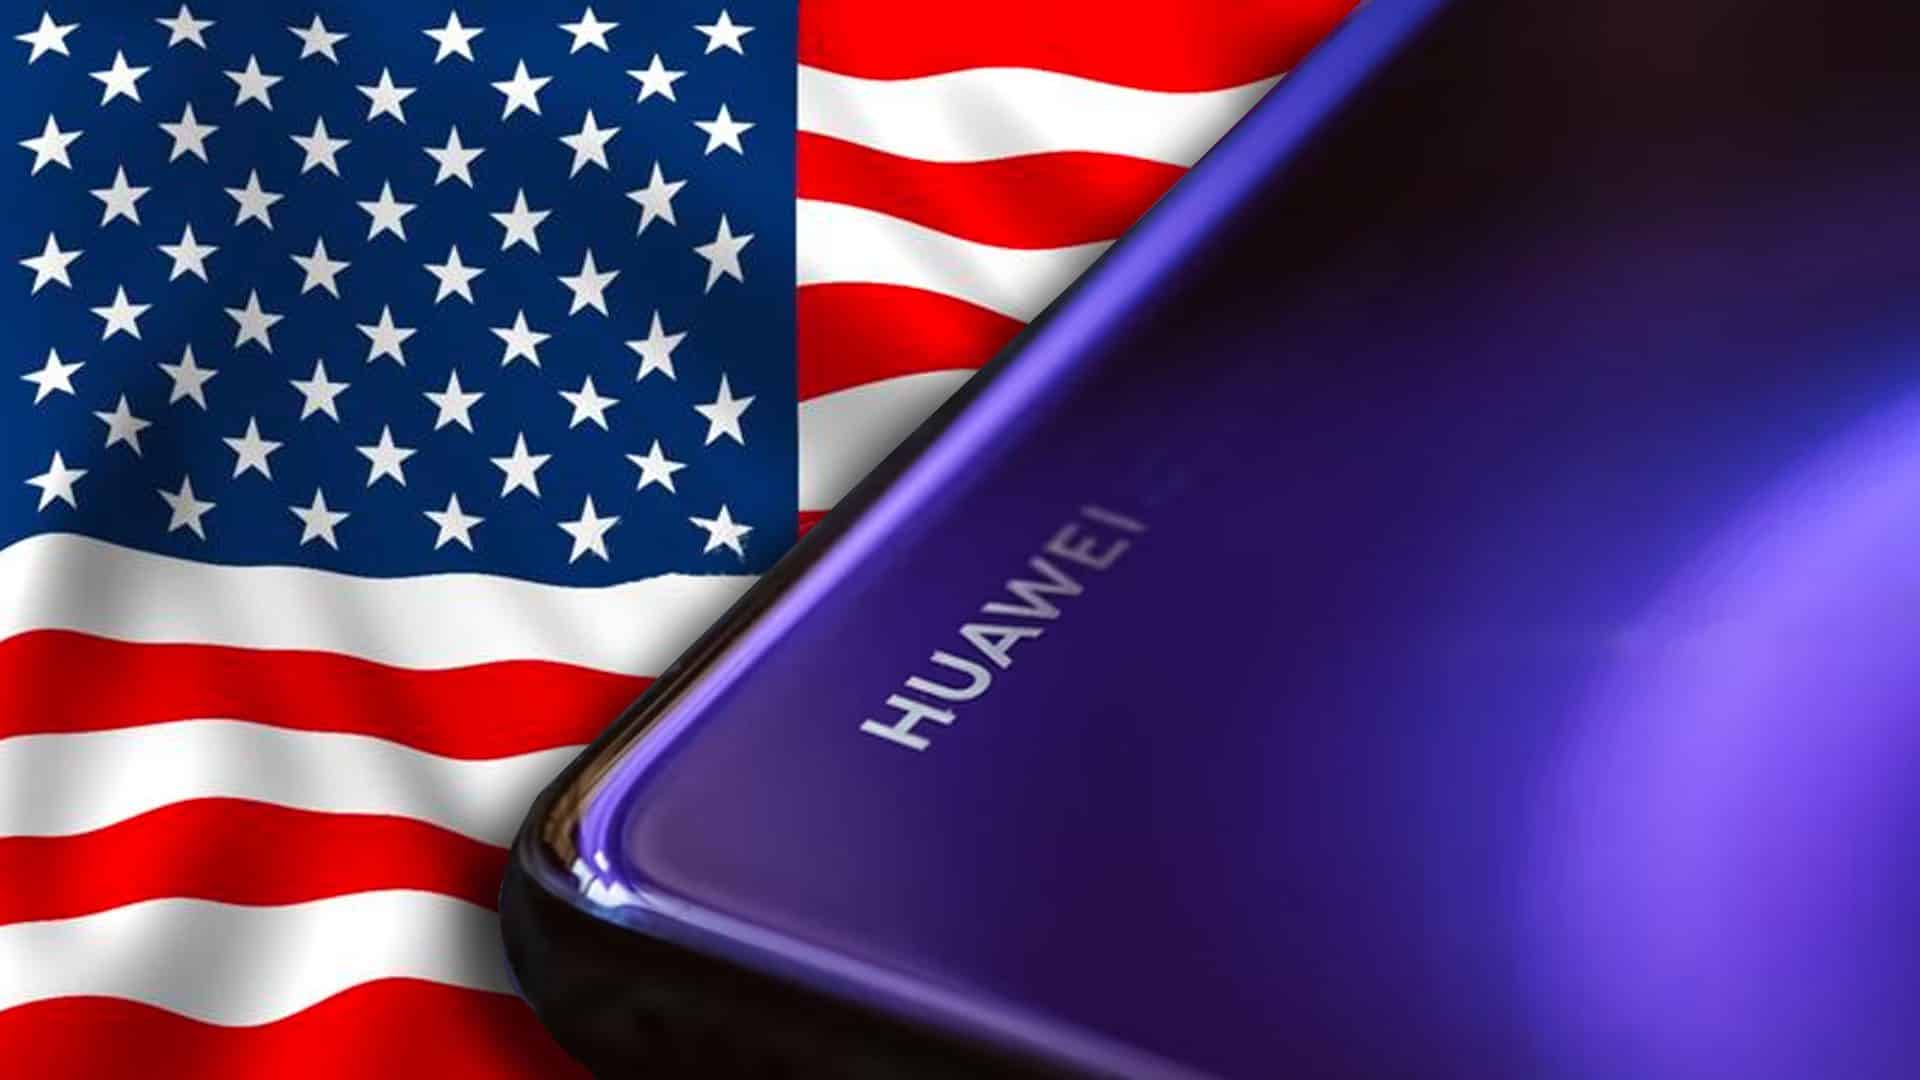 Americká vlajka a zariadenie od spoločnosti Huawei